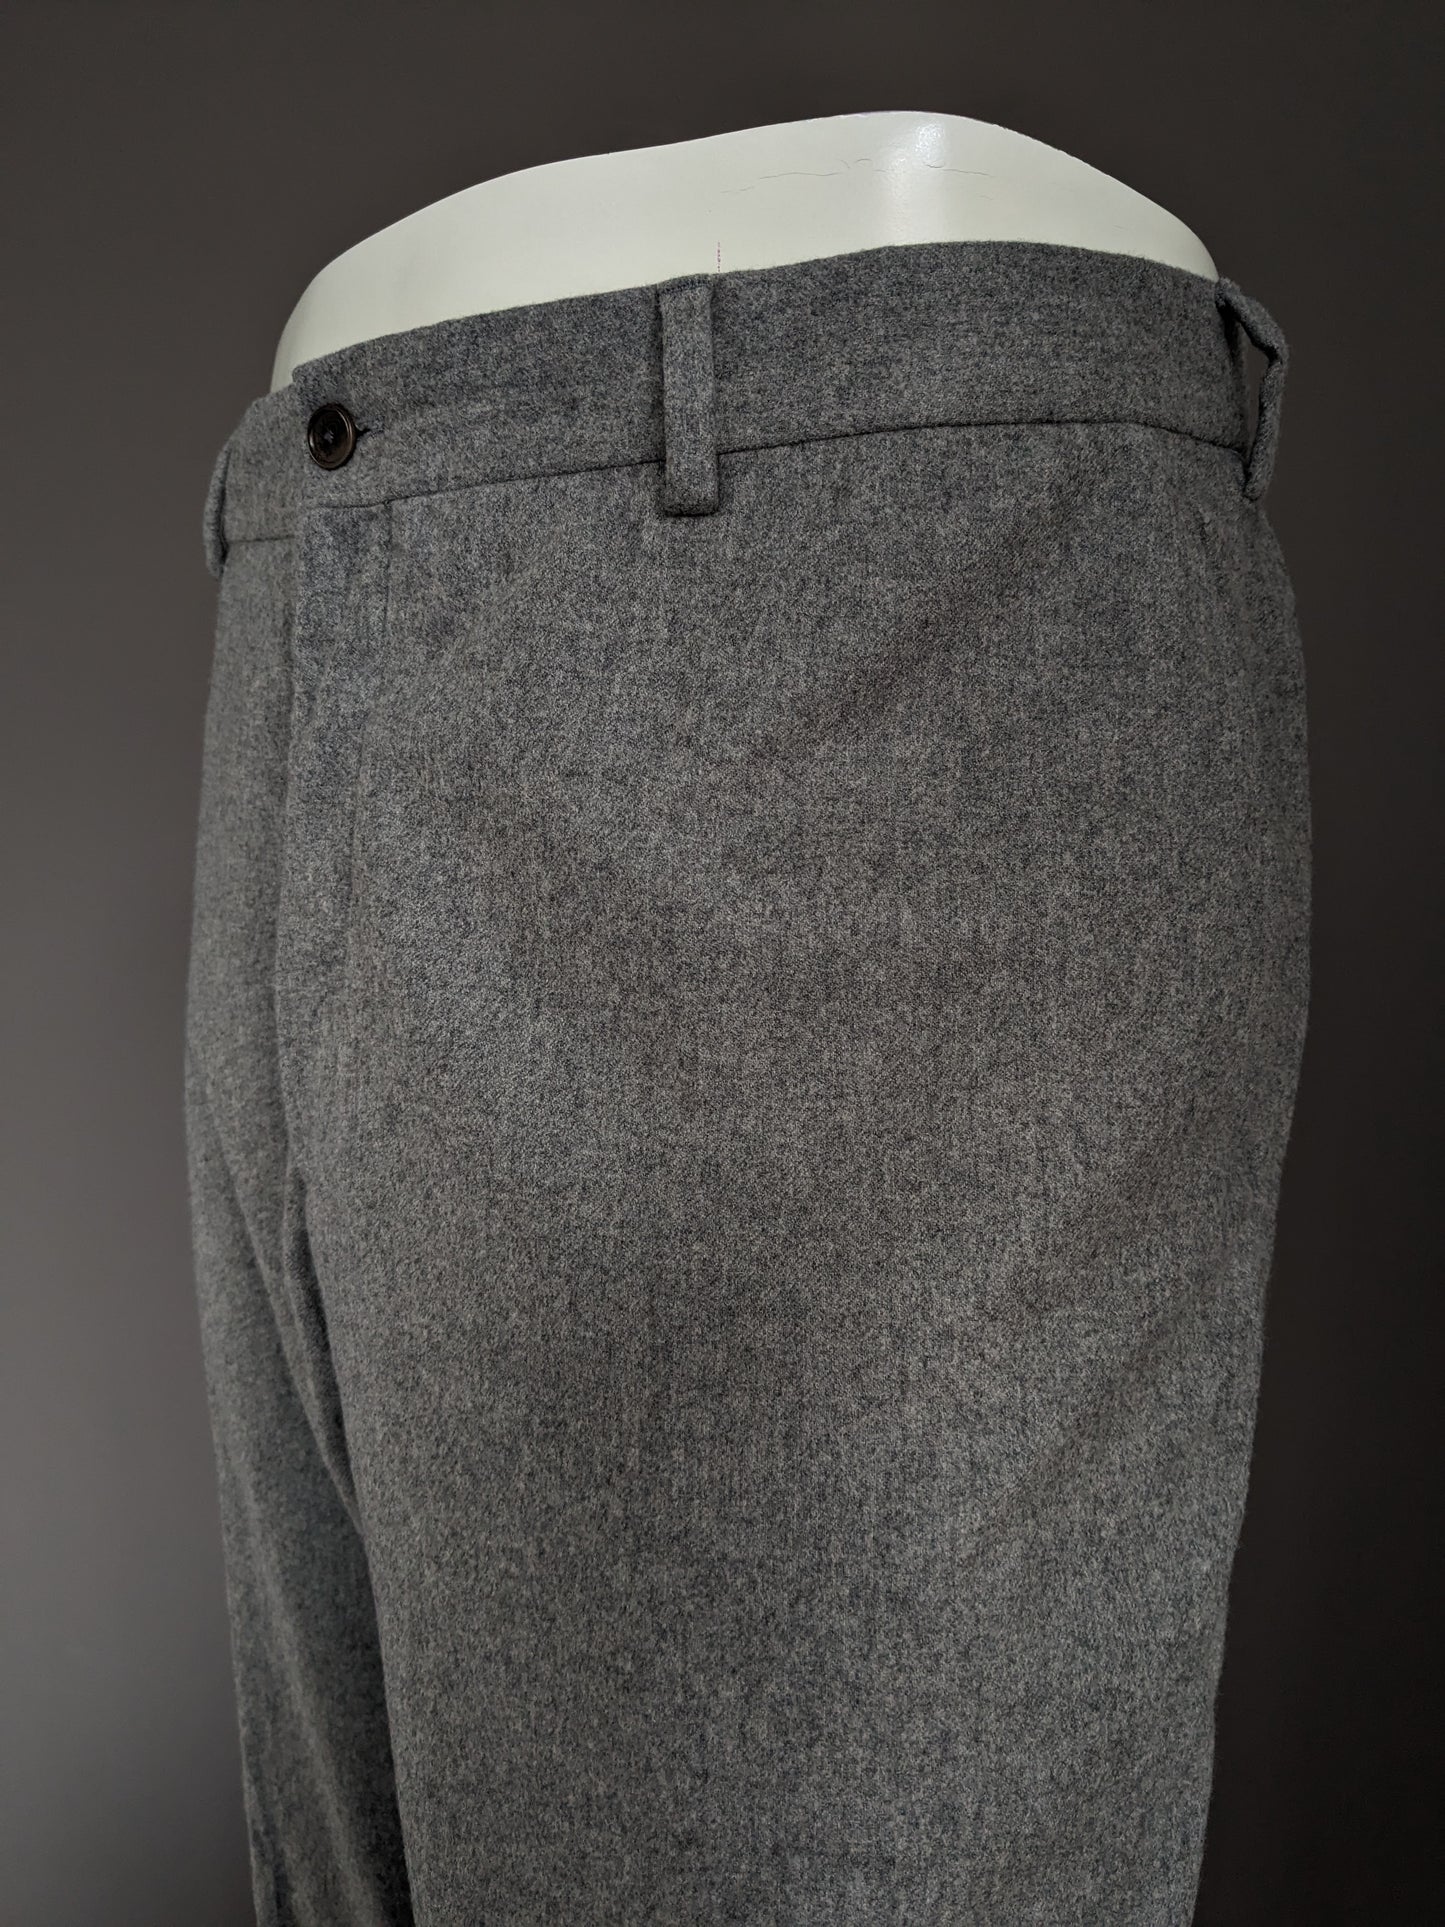 Woolen Ralph Lauren Pantalon. Gray mixed. Size 46 / S.